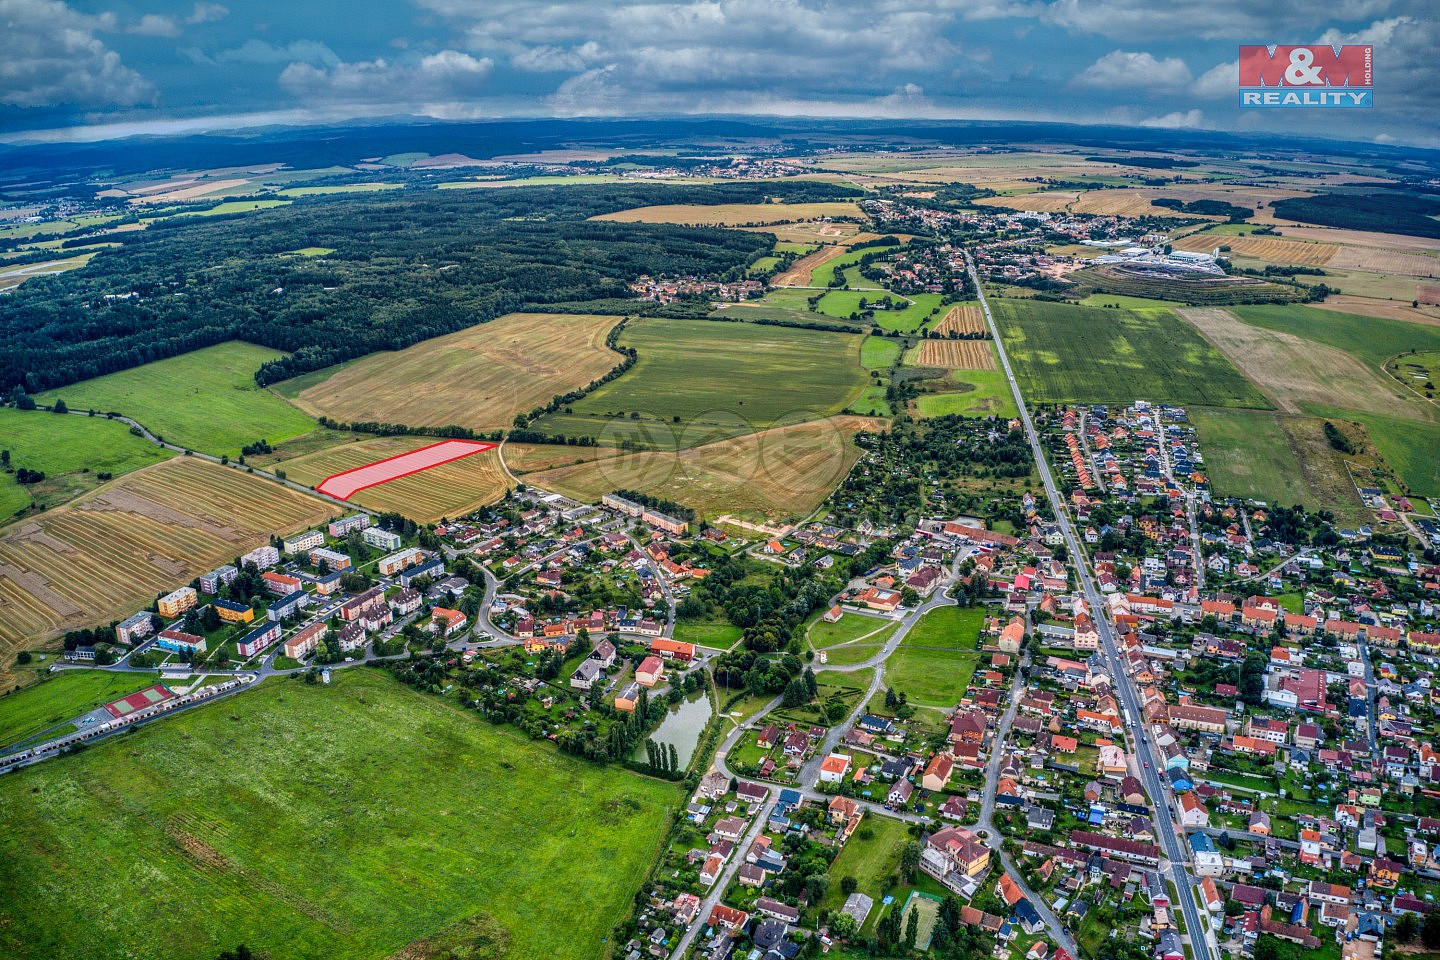 Líně, okres Plzeň-sever